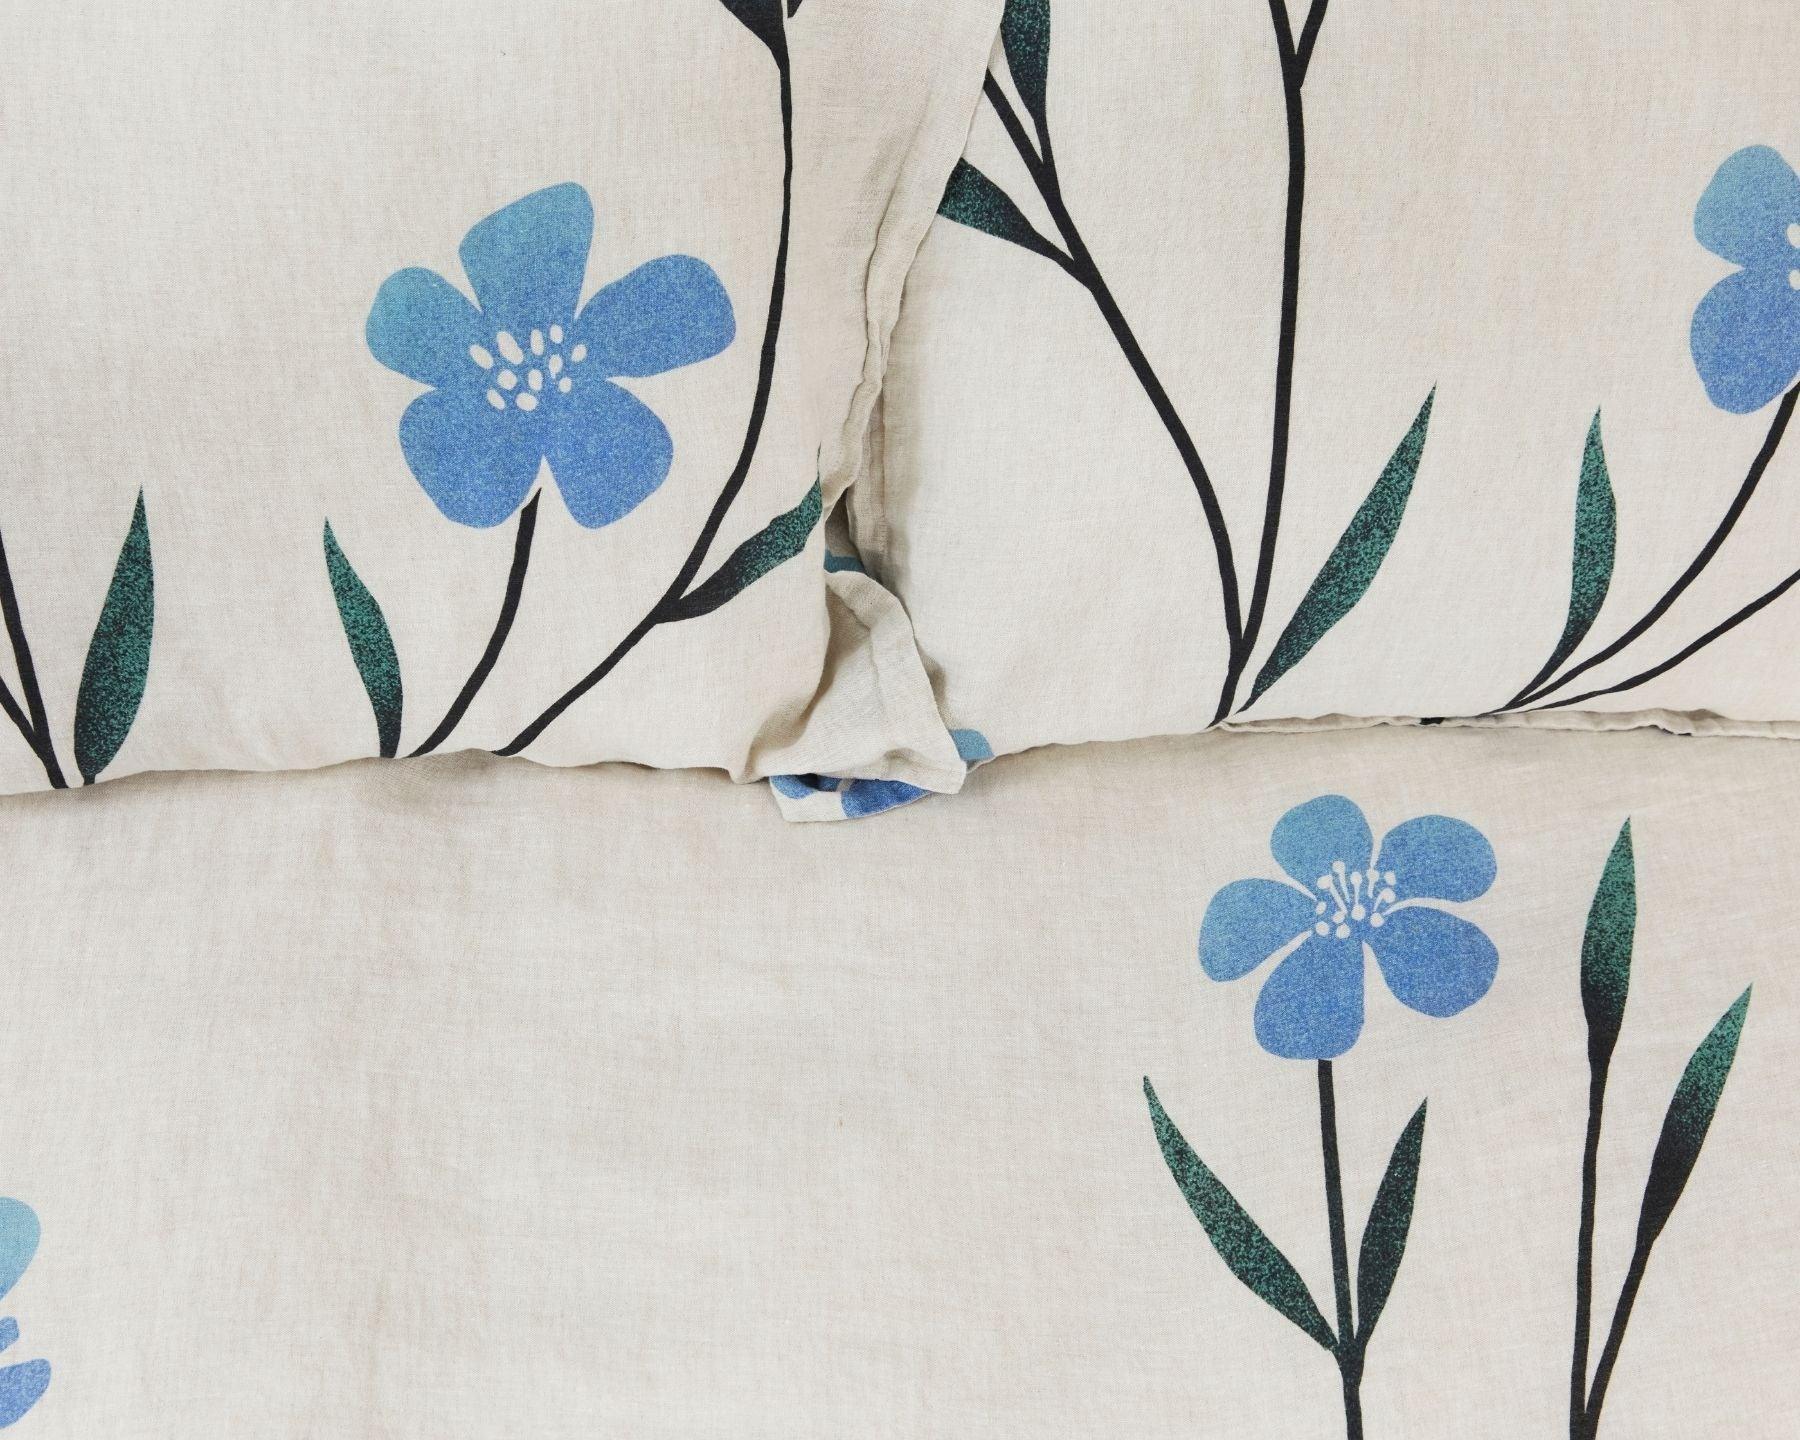 Organic European linen duvet cover on natural flax linen with Scandinavian floral design featuring blue flowers - Twin / Standard, Full/Queen / Standard, King/Cal-King / Standard, King/Cal-King / King